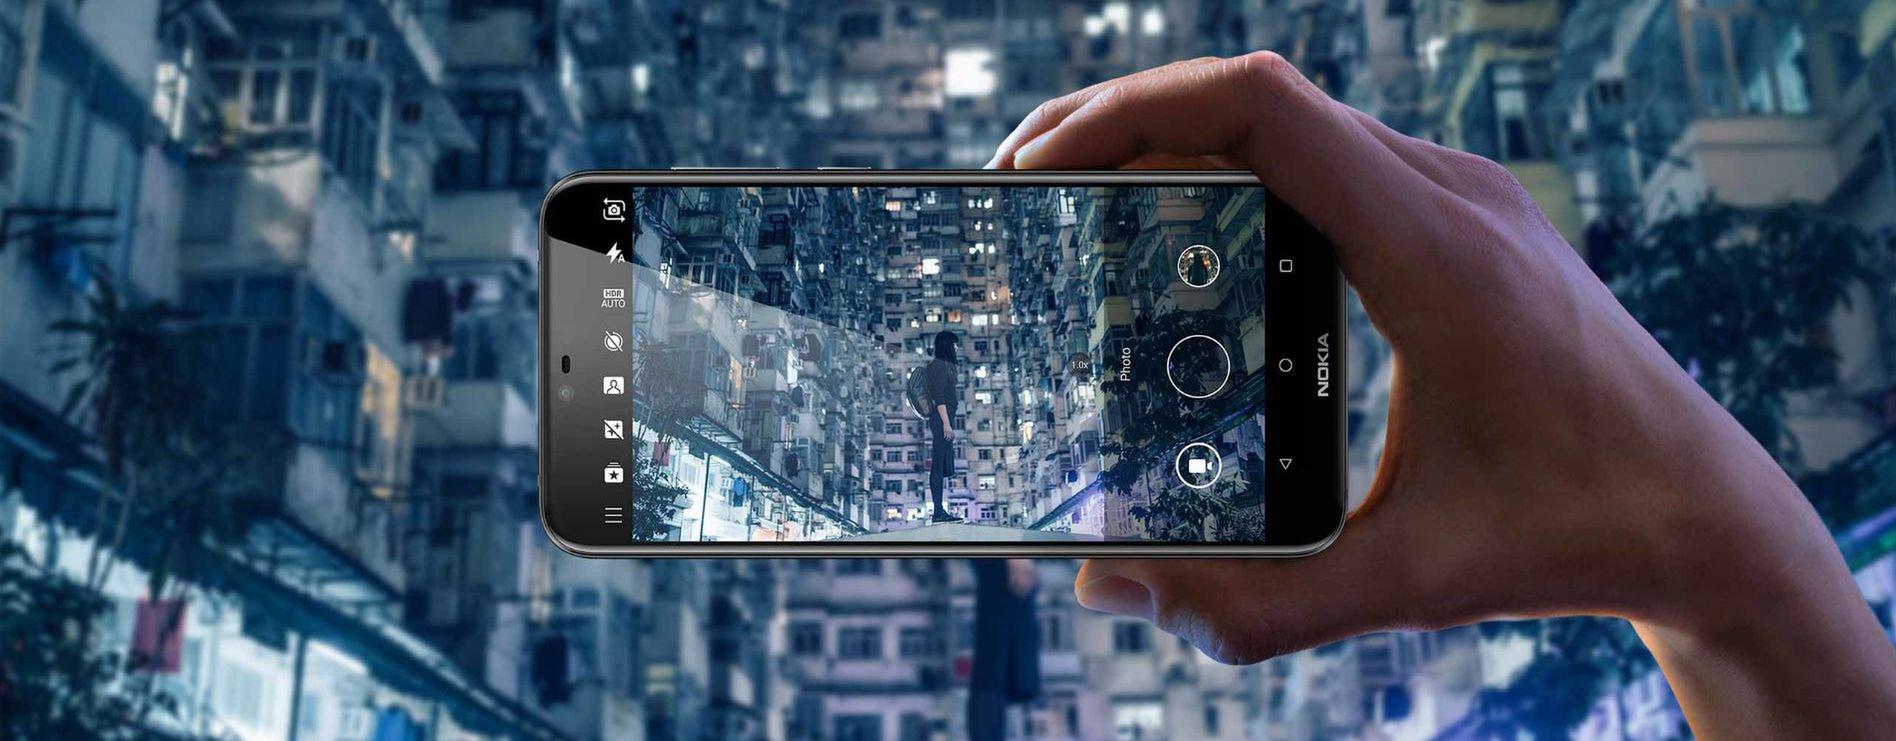 De net aangekondigde Nokia X6 met inkeping in het scherm die helaas alleen in China te krijgen gaat zijn, voorlopig althans